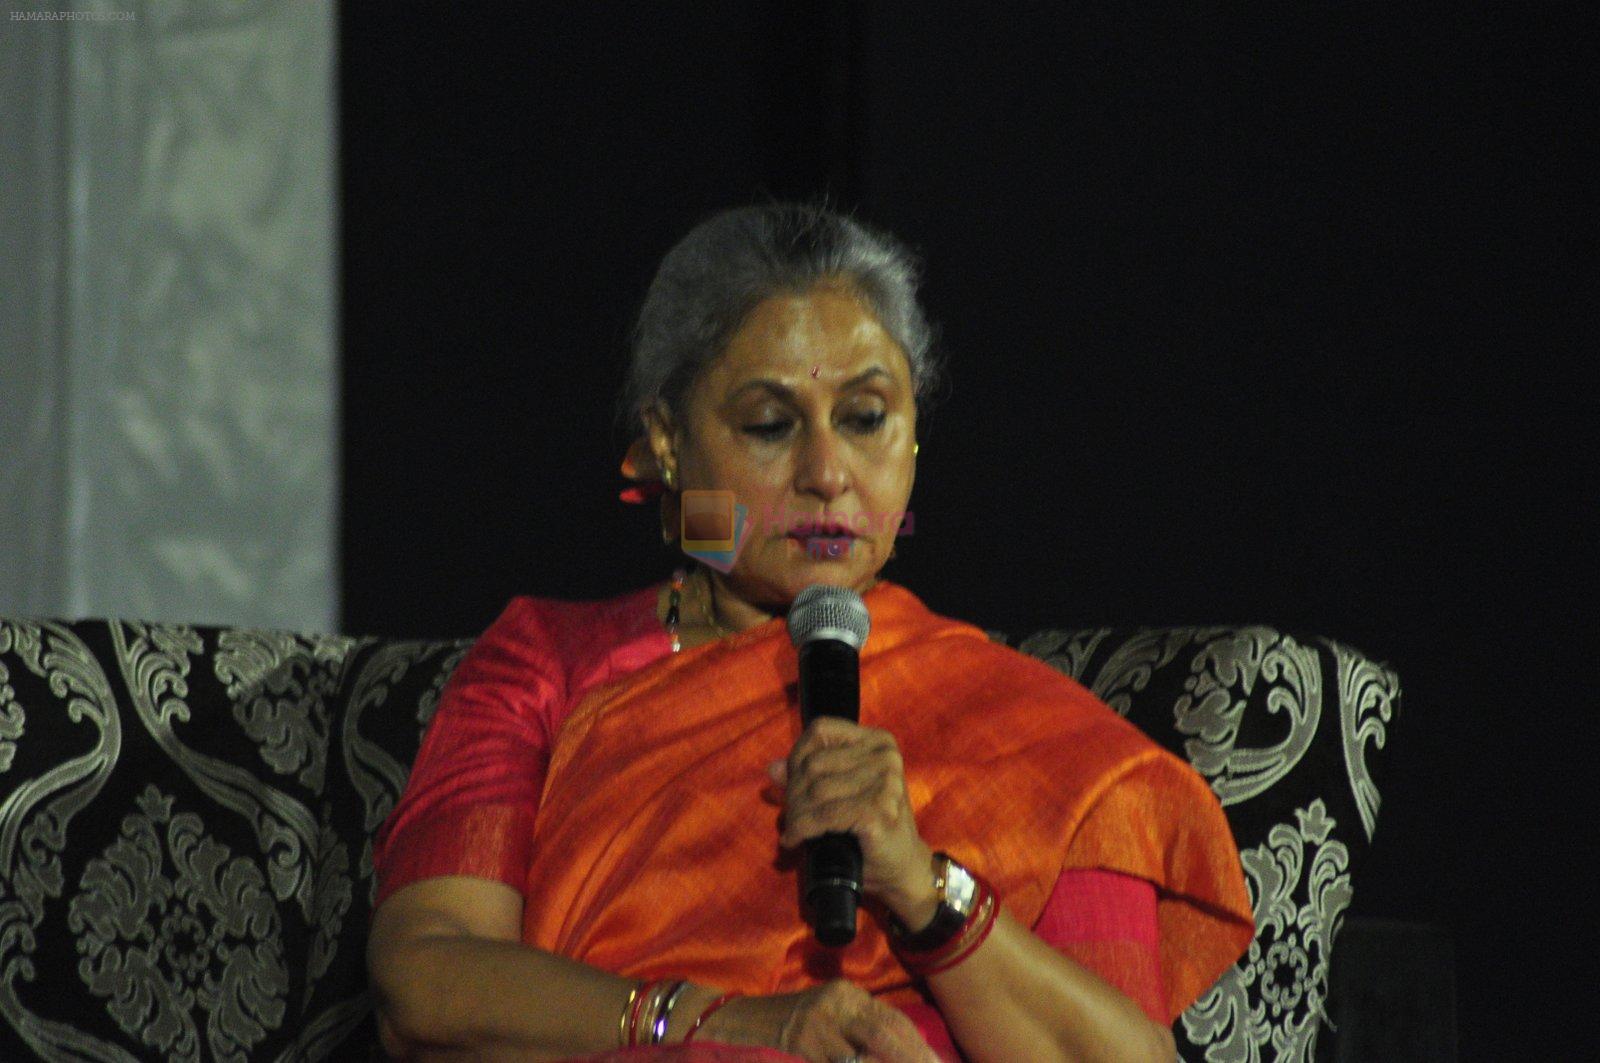 Jaya Bachchan at Umang fest on 16th Aug 2016